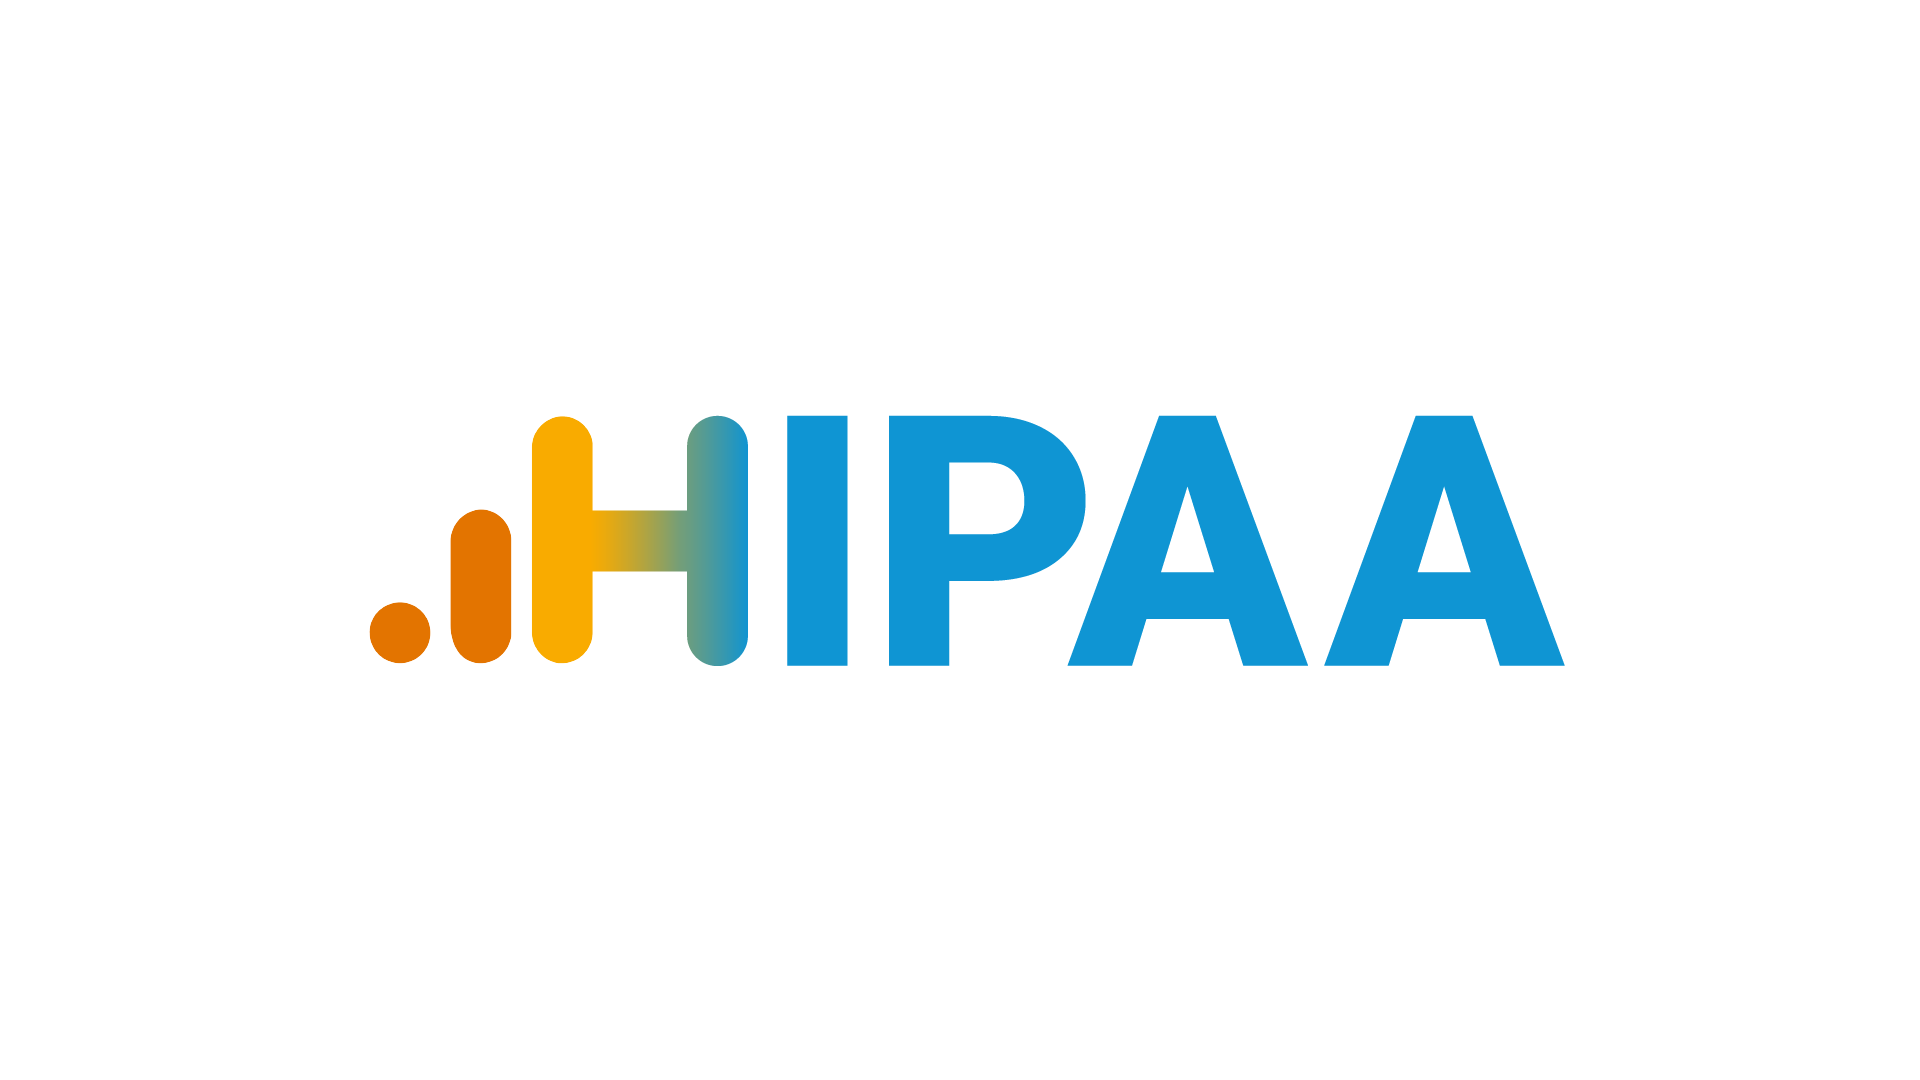 Google Analytics Isn’t HIPAA Compliant